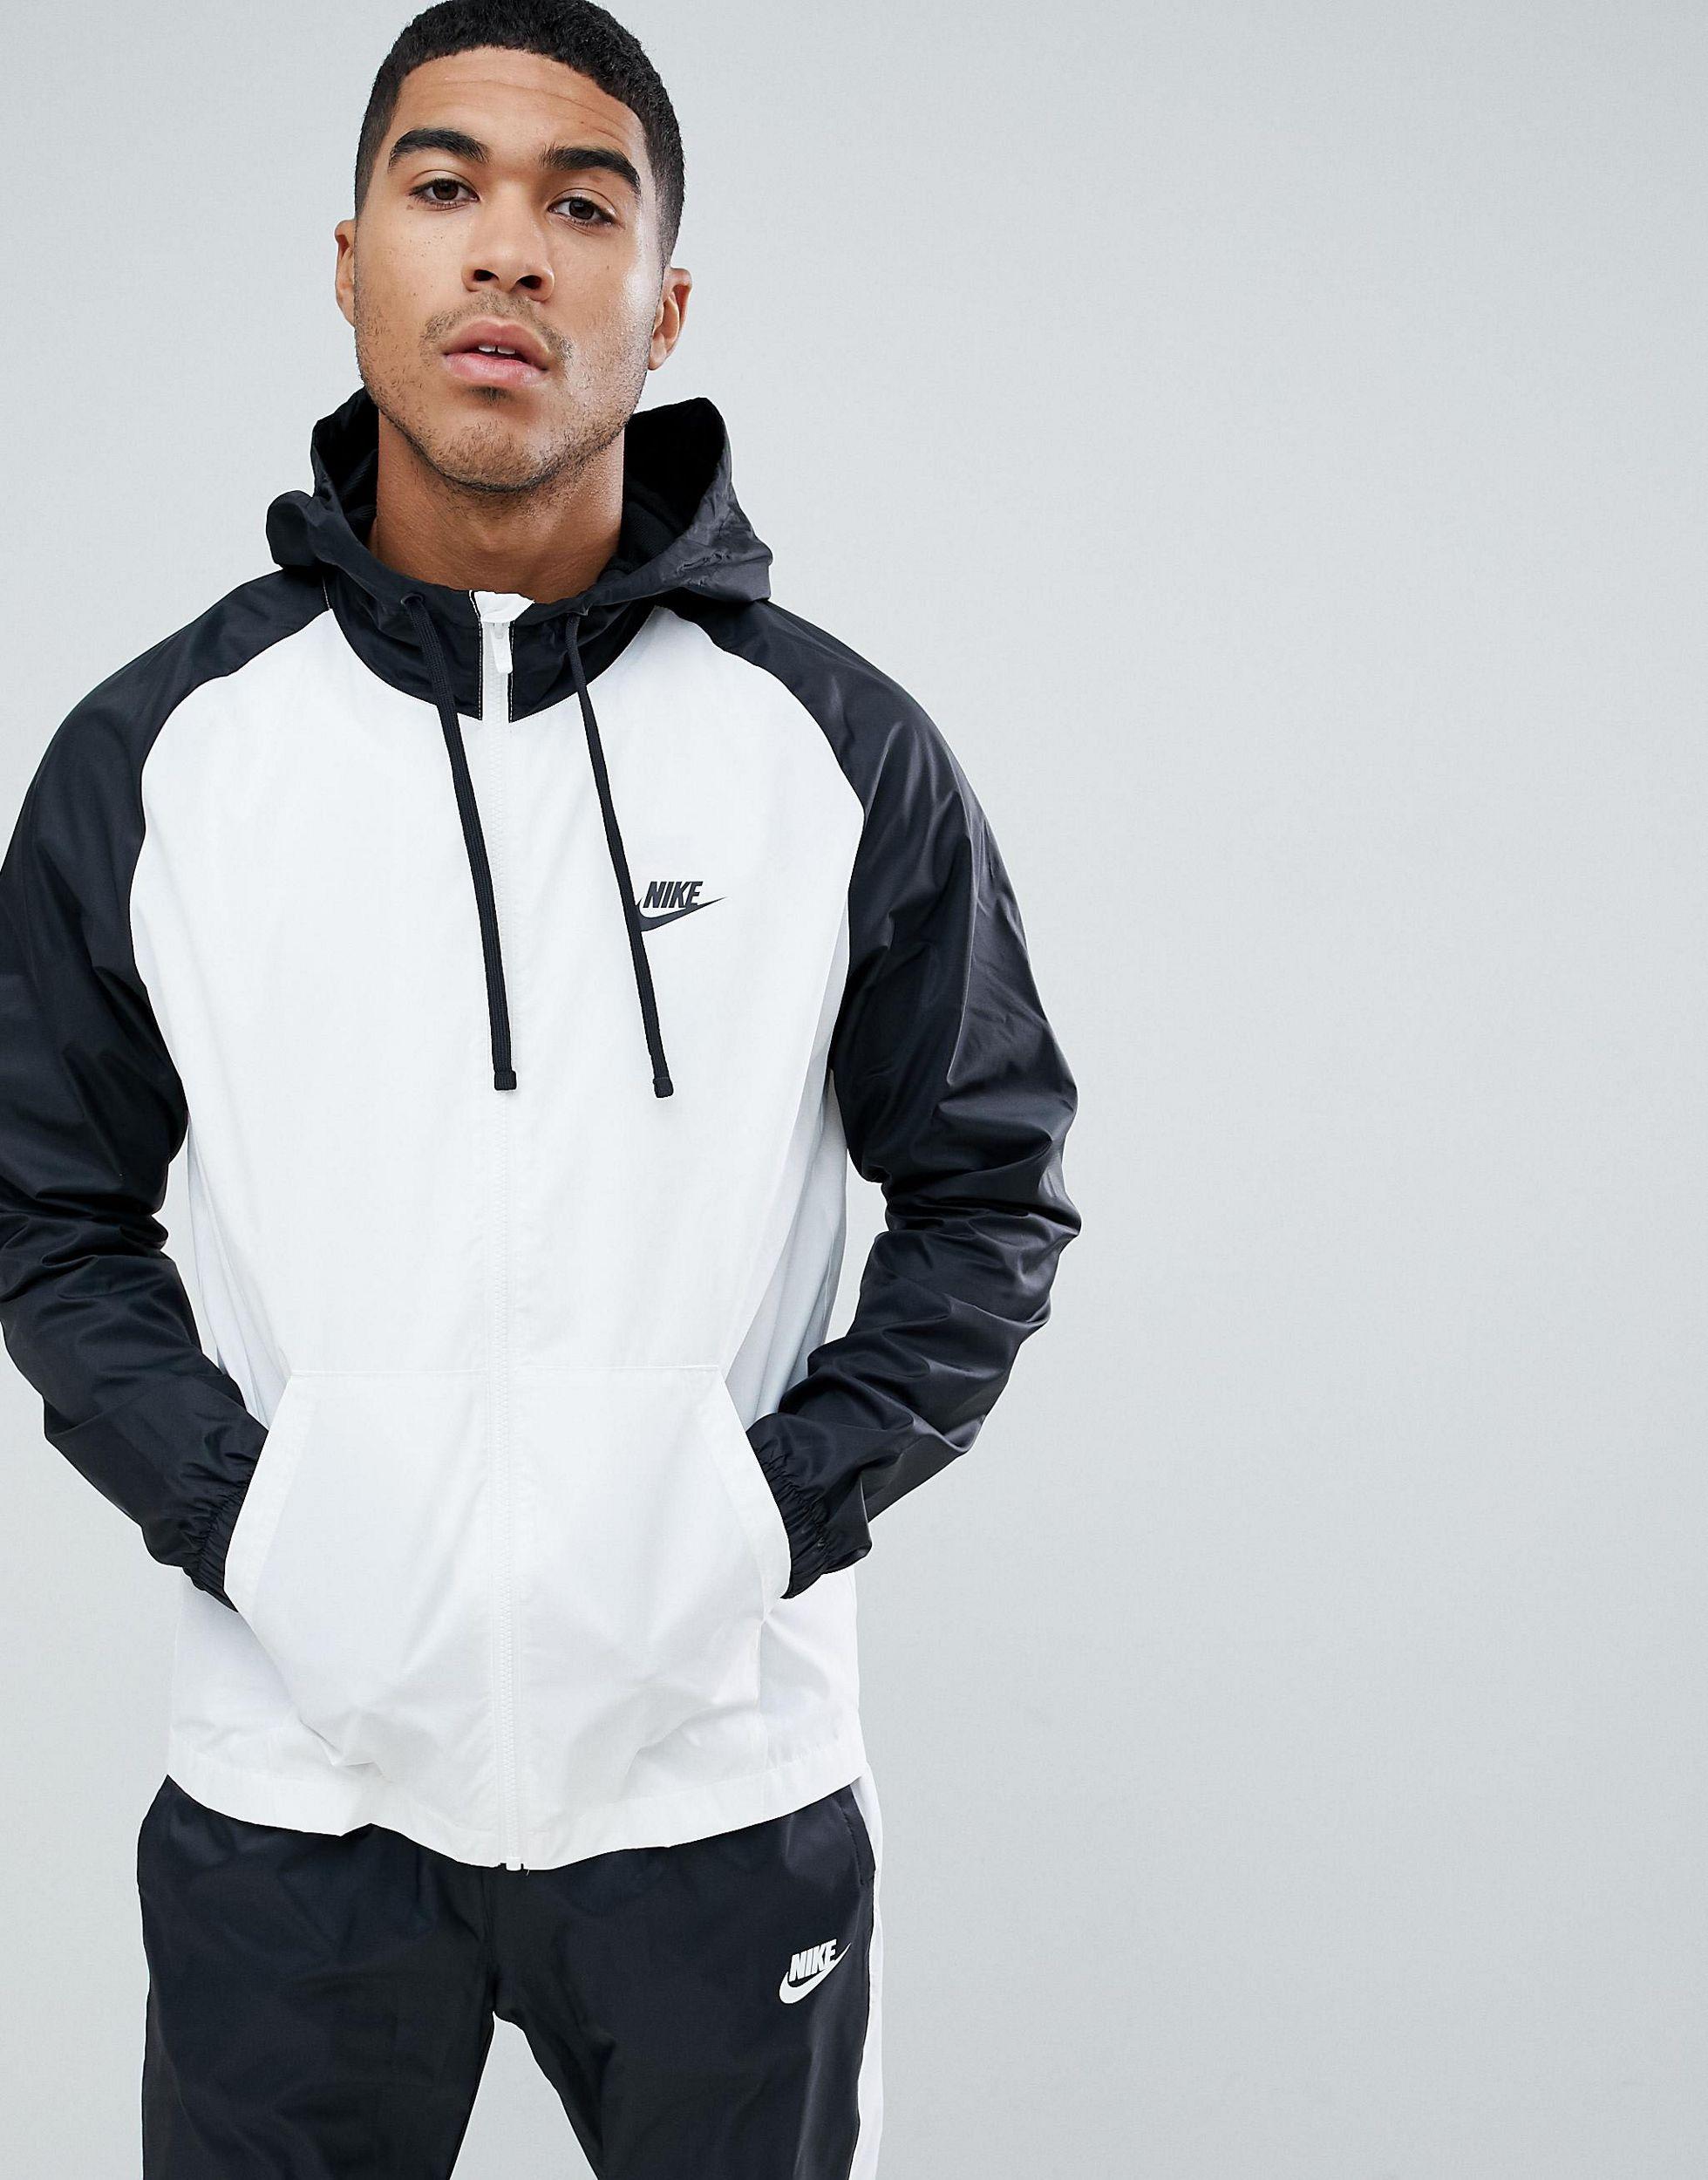 Ensemble Nike Noir Et Blanc Shop, SAVE 31% - loutzenhiserfuneralhomes.com